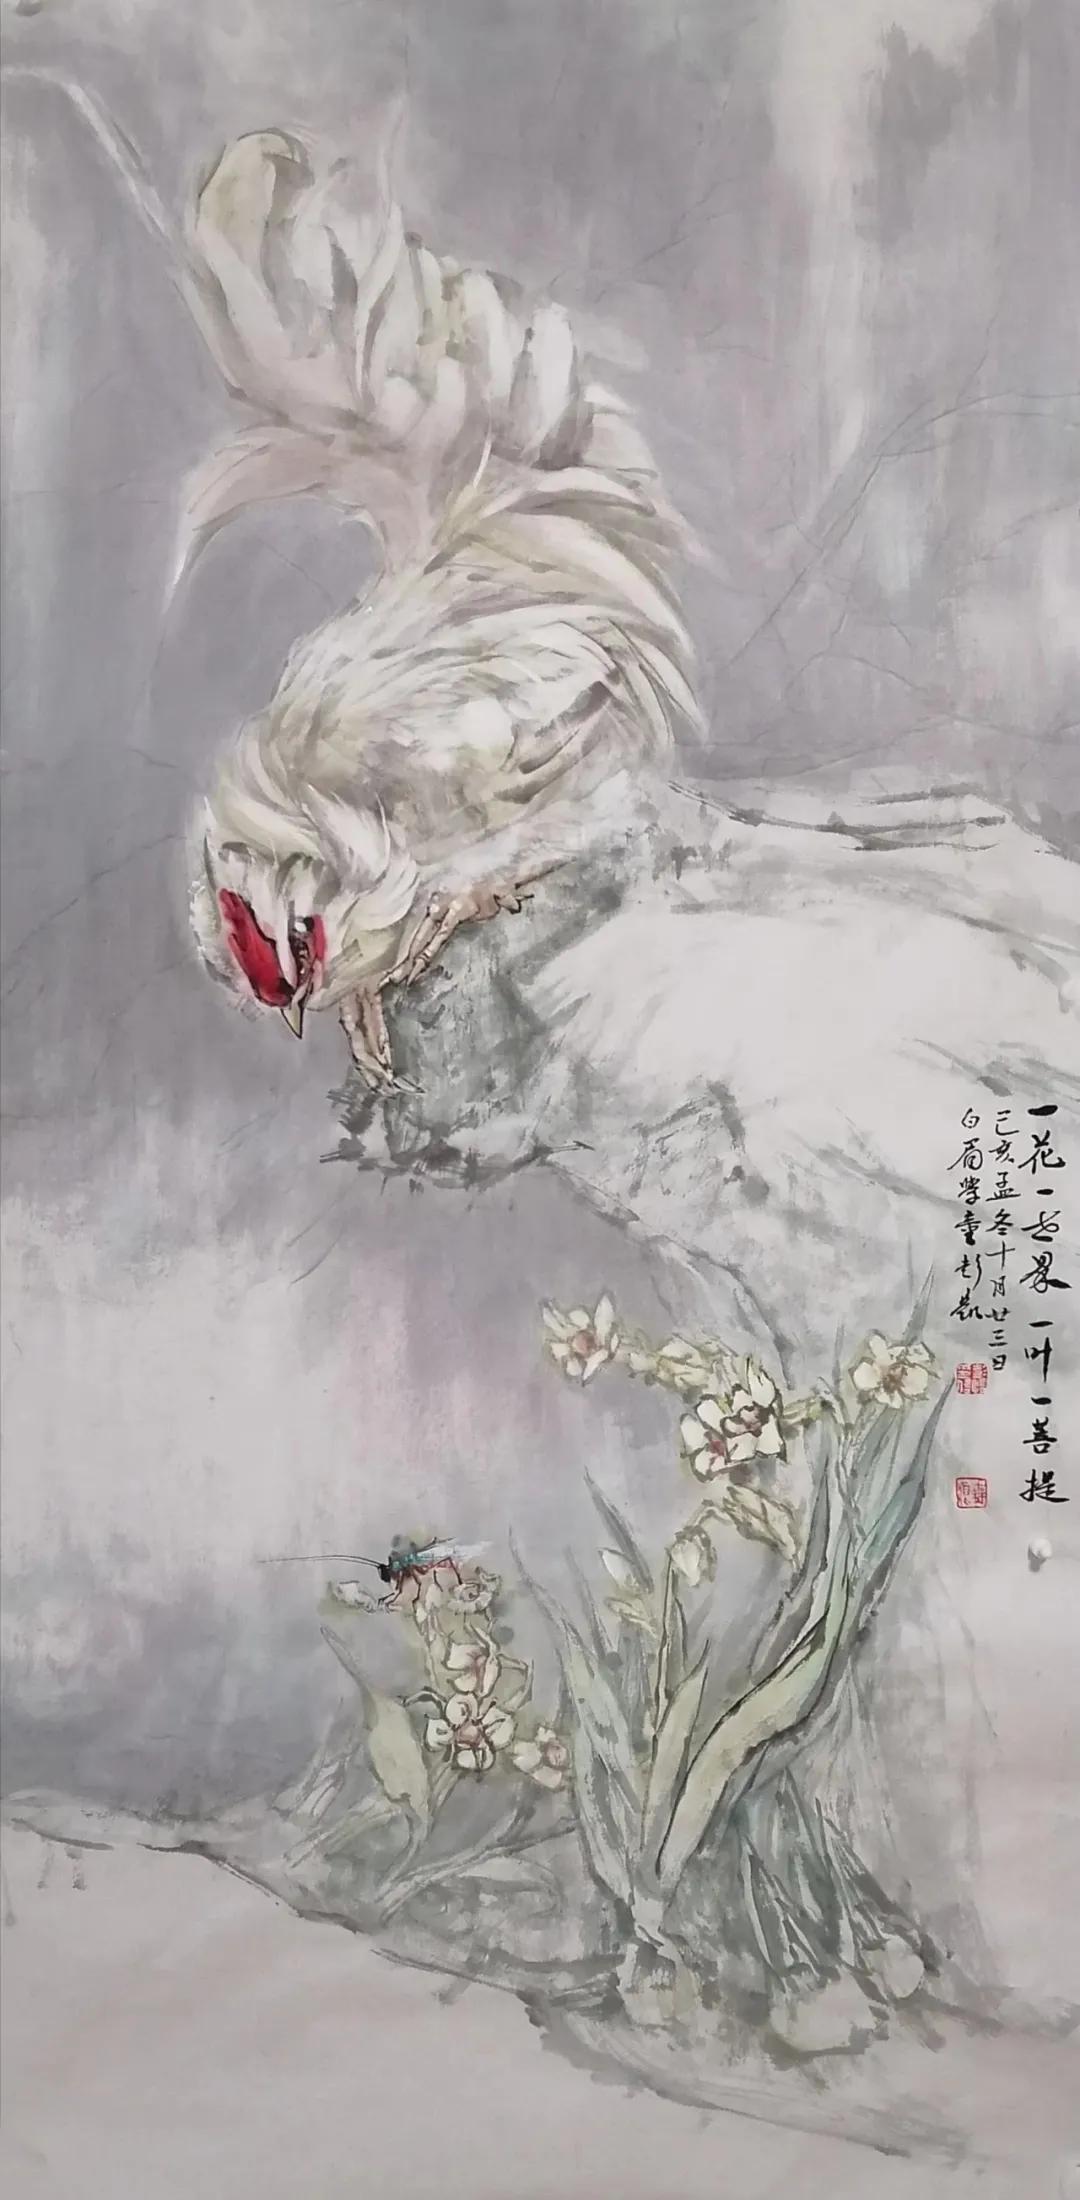 传承与创新,中国当代最具学术价值与收藏潜力的画家—彭凯